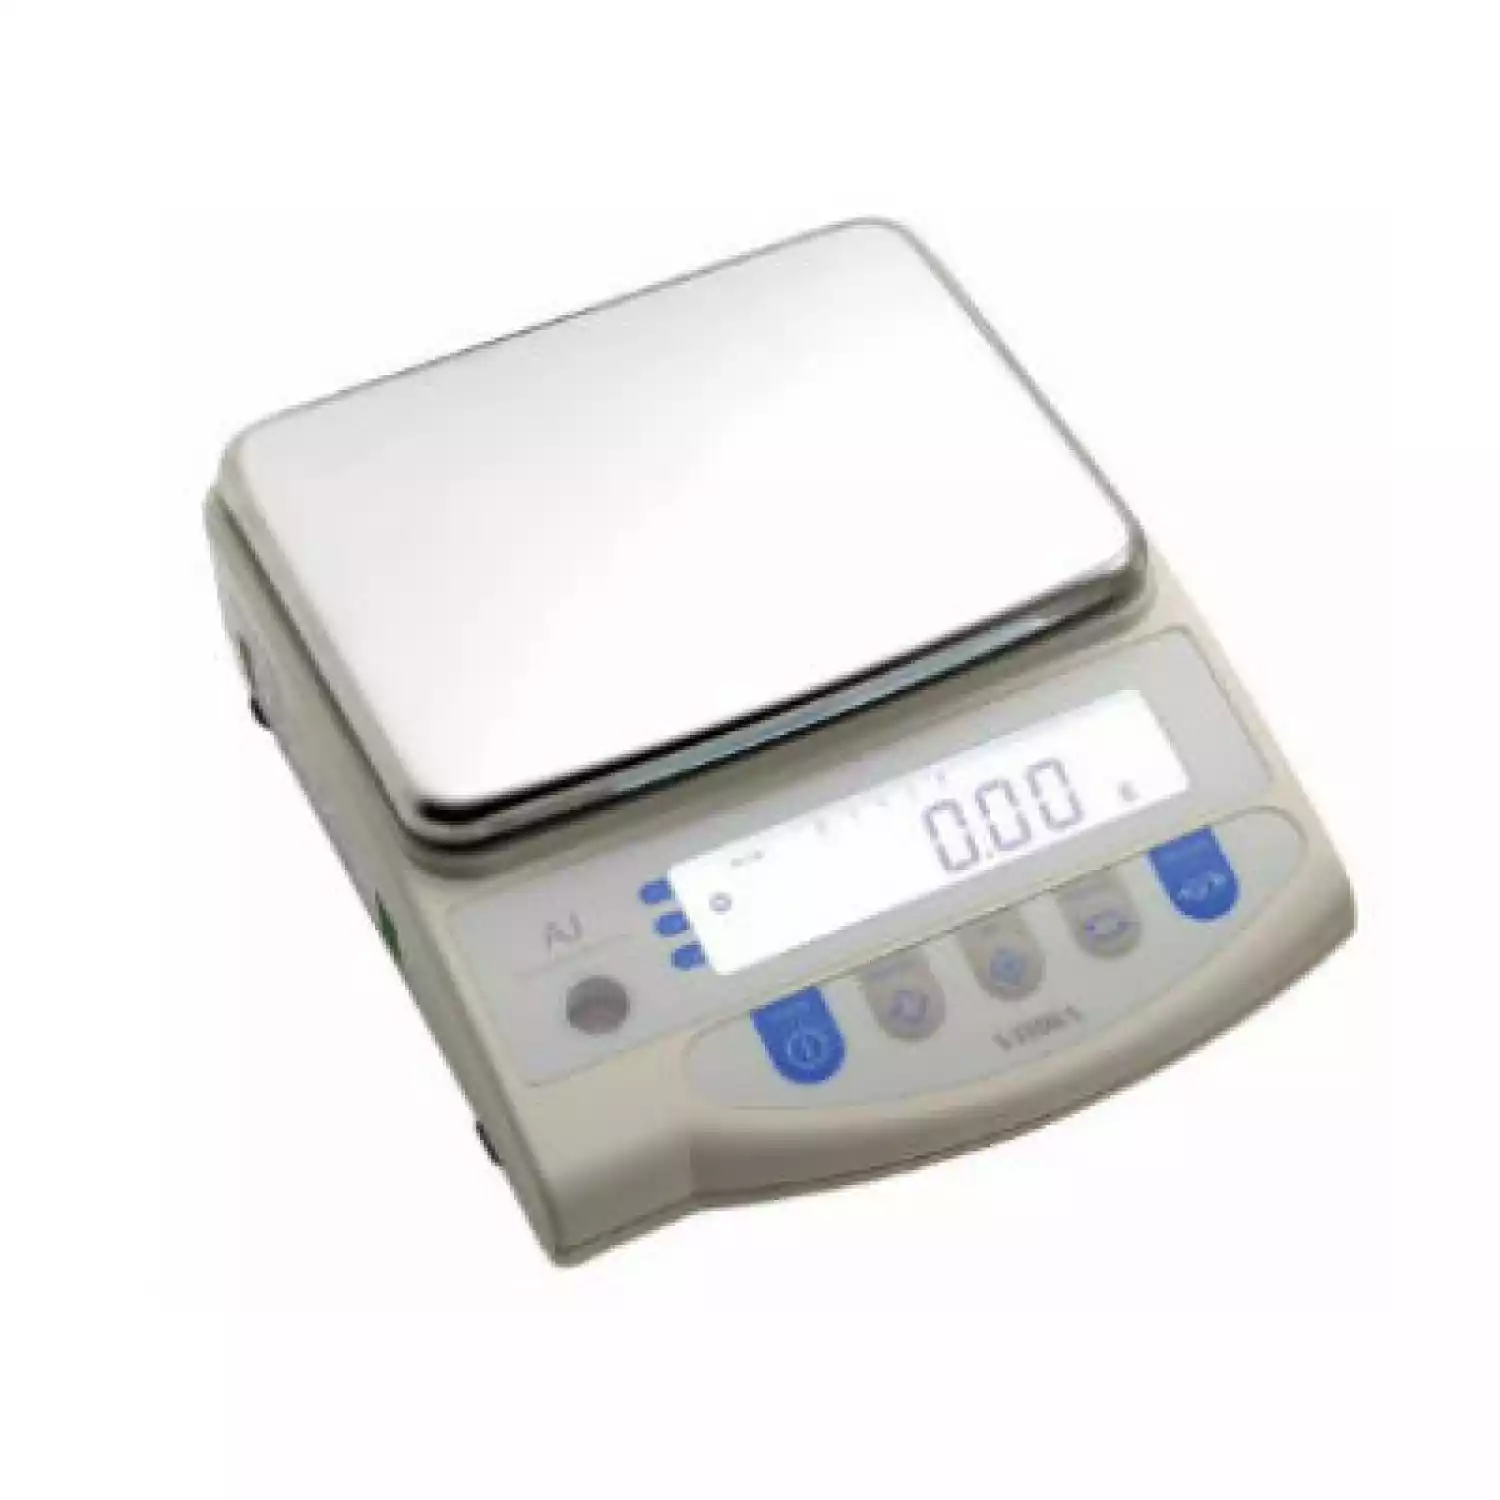 AJ-4200CE весы лабораторные (НПВ=4200 г; d=0,01 г) - 1